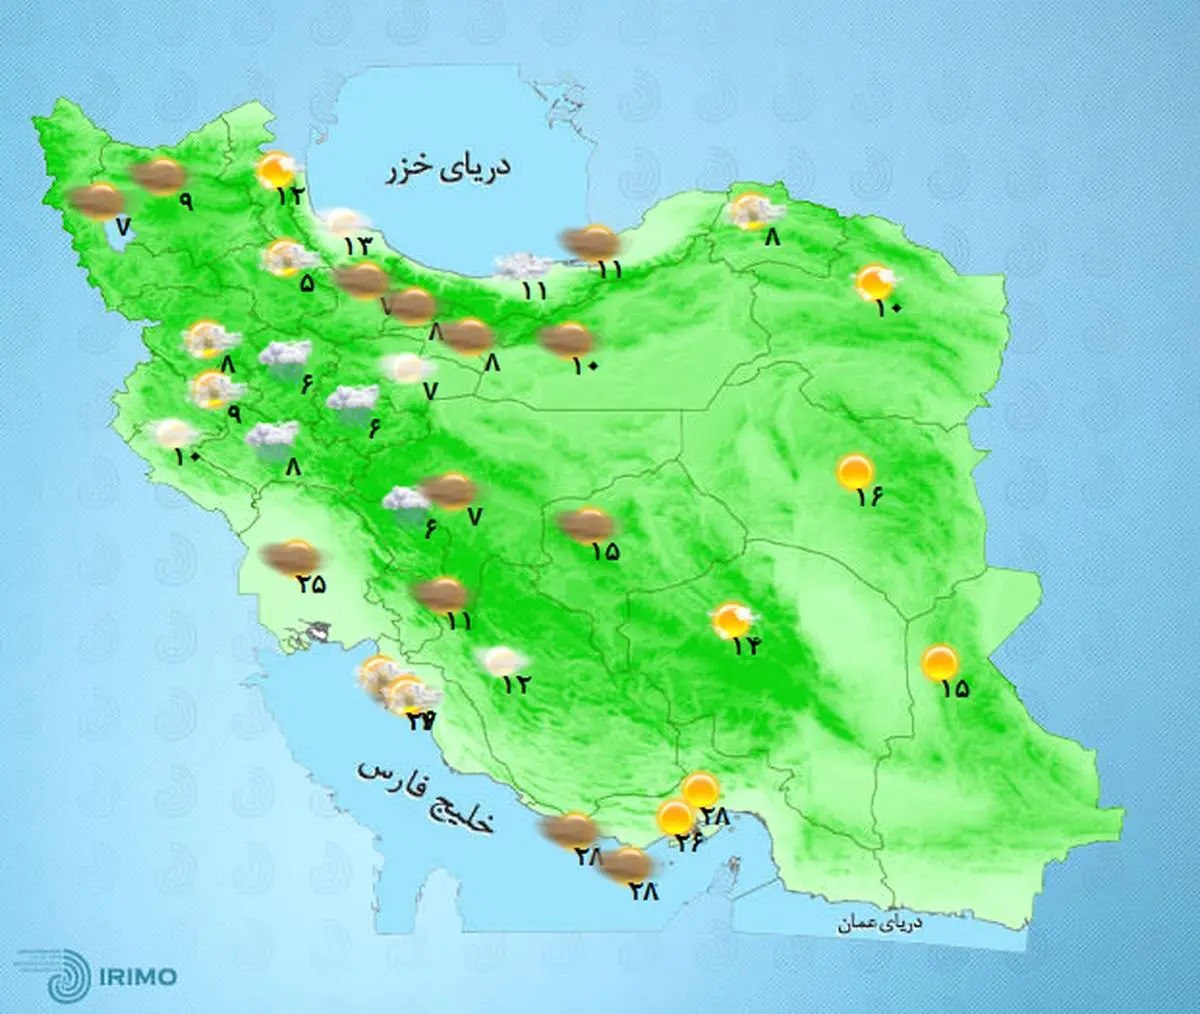 آخرین پیش بینی وضعیت آب و هوا برای چهارشنبه | آب و هوای تهران فردا چهارشنبه  3 آذر 1400